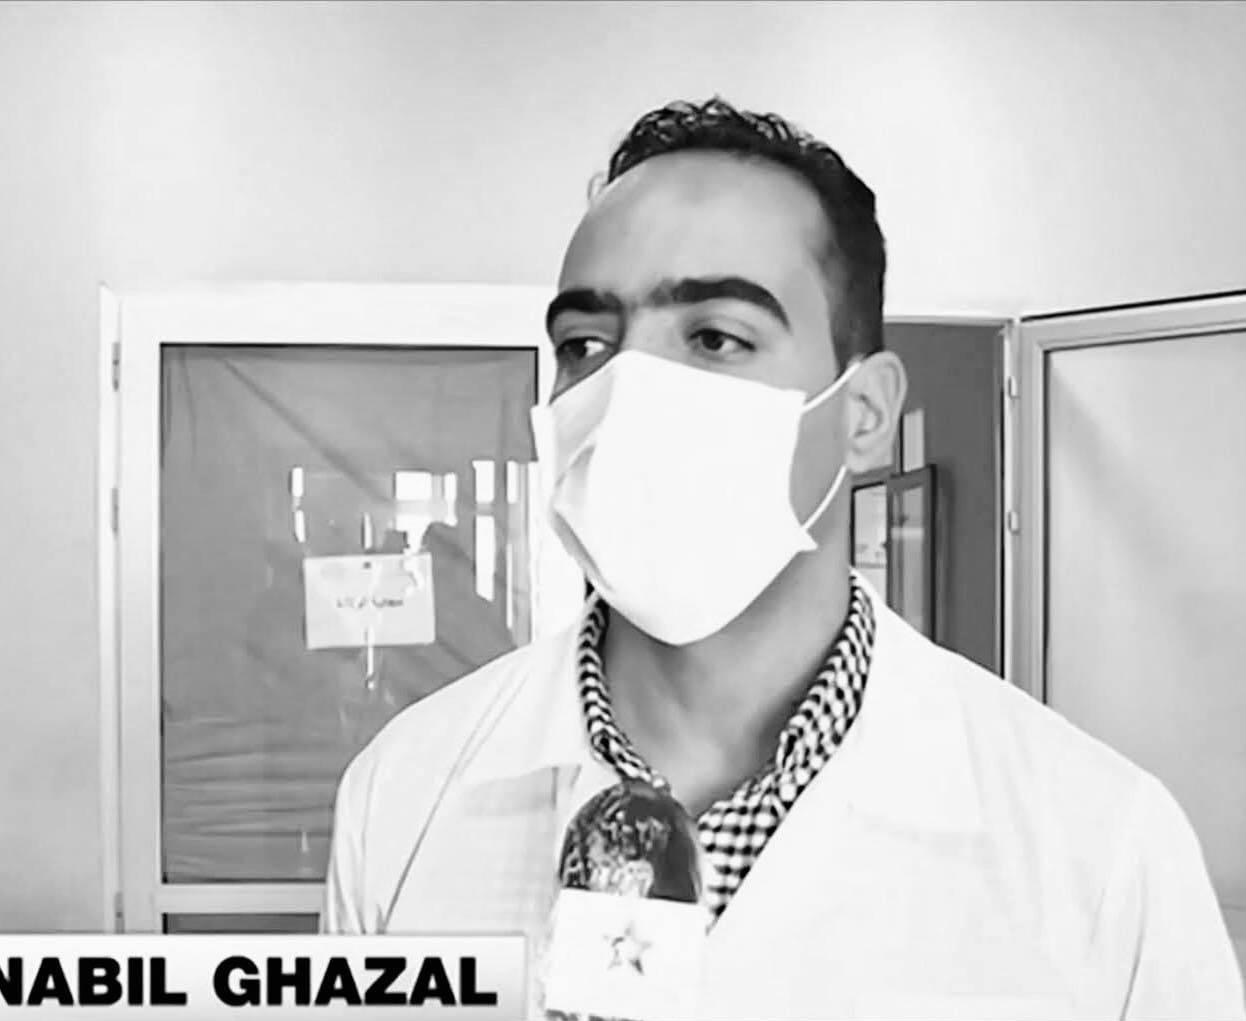 Dr GHAZAL NABIL